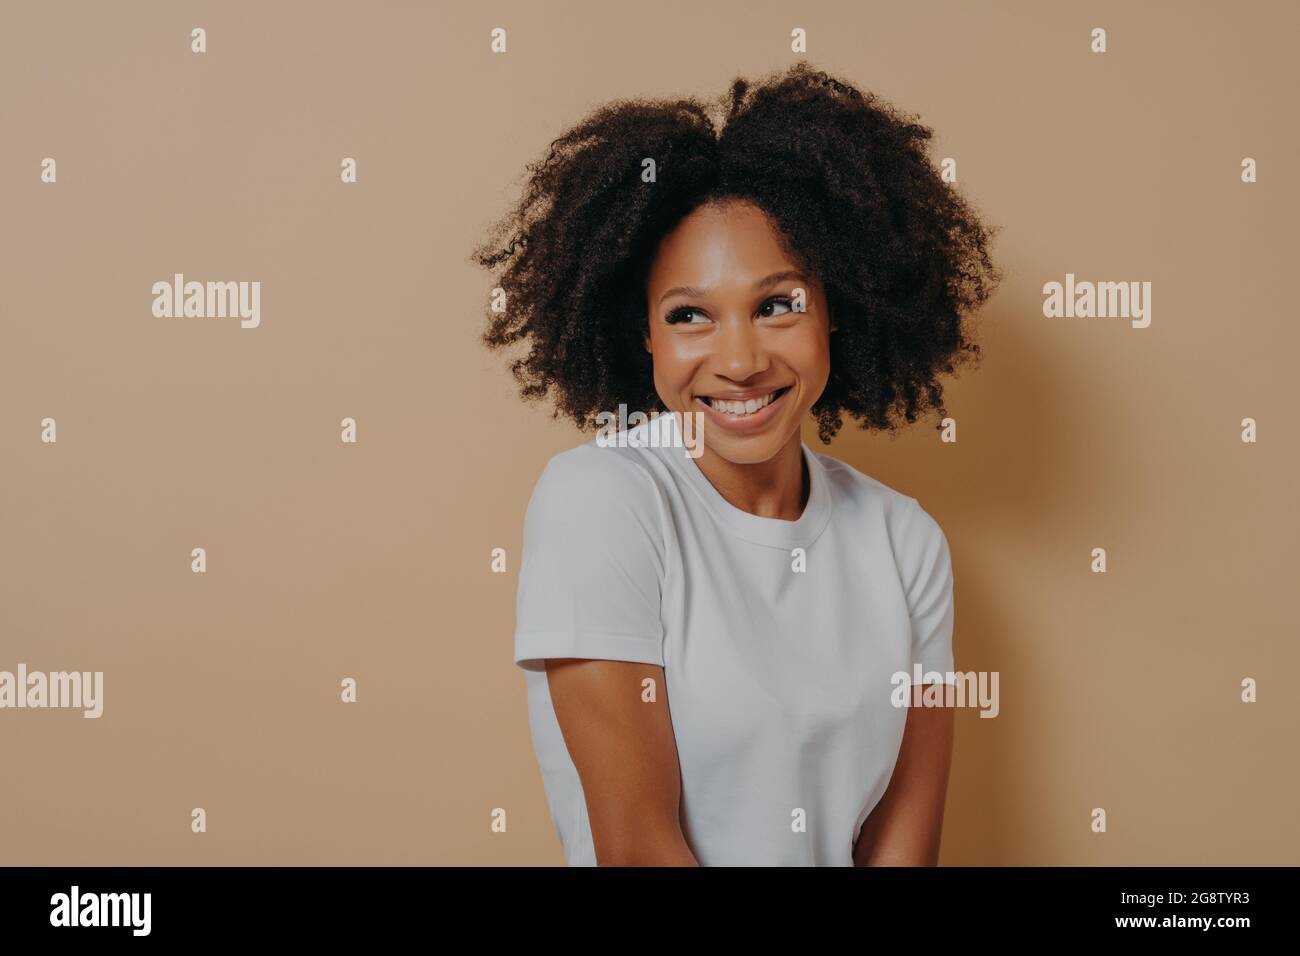 Mignonne africaine avec un sourire crasseux regardant de côté avec de la timidité, isolée sur fond beige Banque D'Images